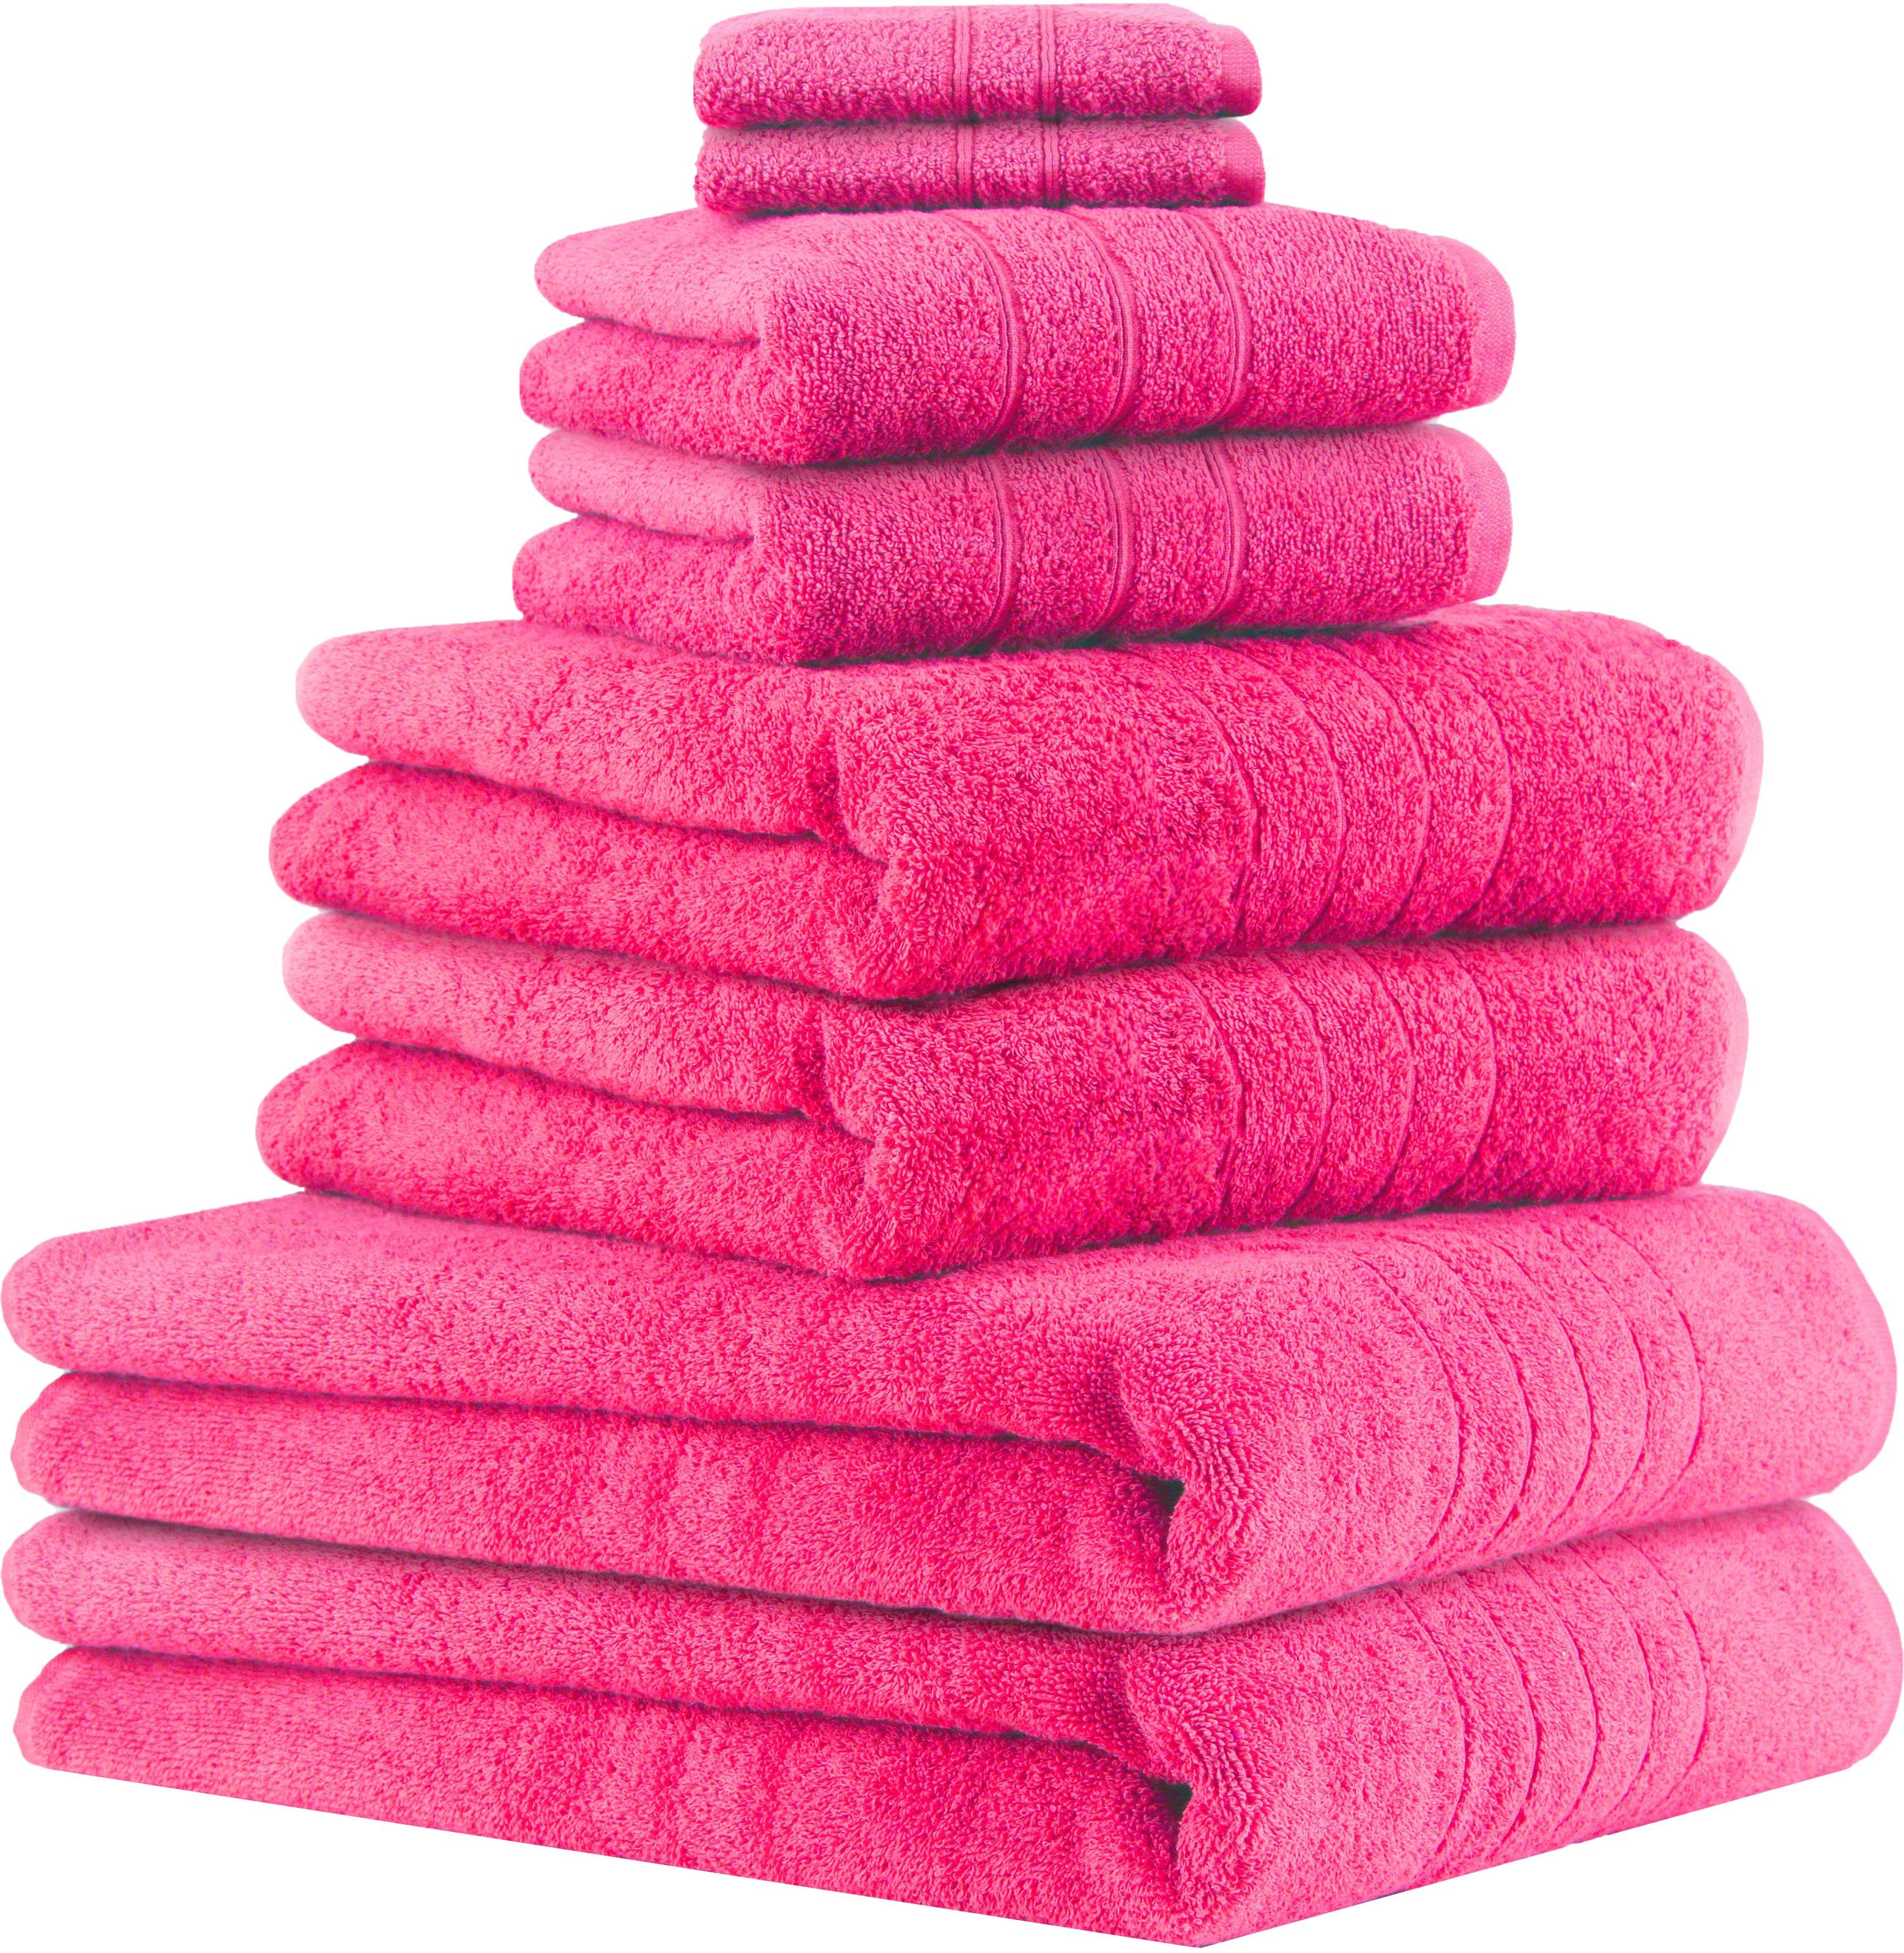 Betz Handtuch Set 8-TLG Handtuch-Set Deluxe 100% Baumwolle 2 Badetücher 2 Duschtücher 2 Handtücher 2 Seiftücher, 100% Baumwolle, (8-tlg) fuchsia